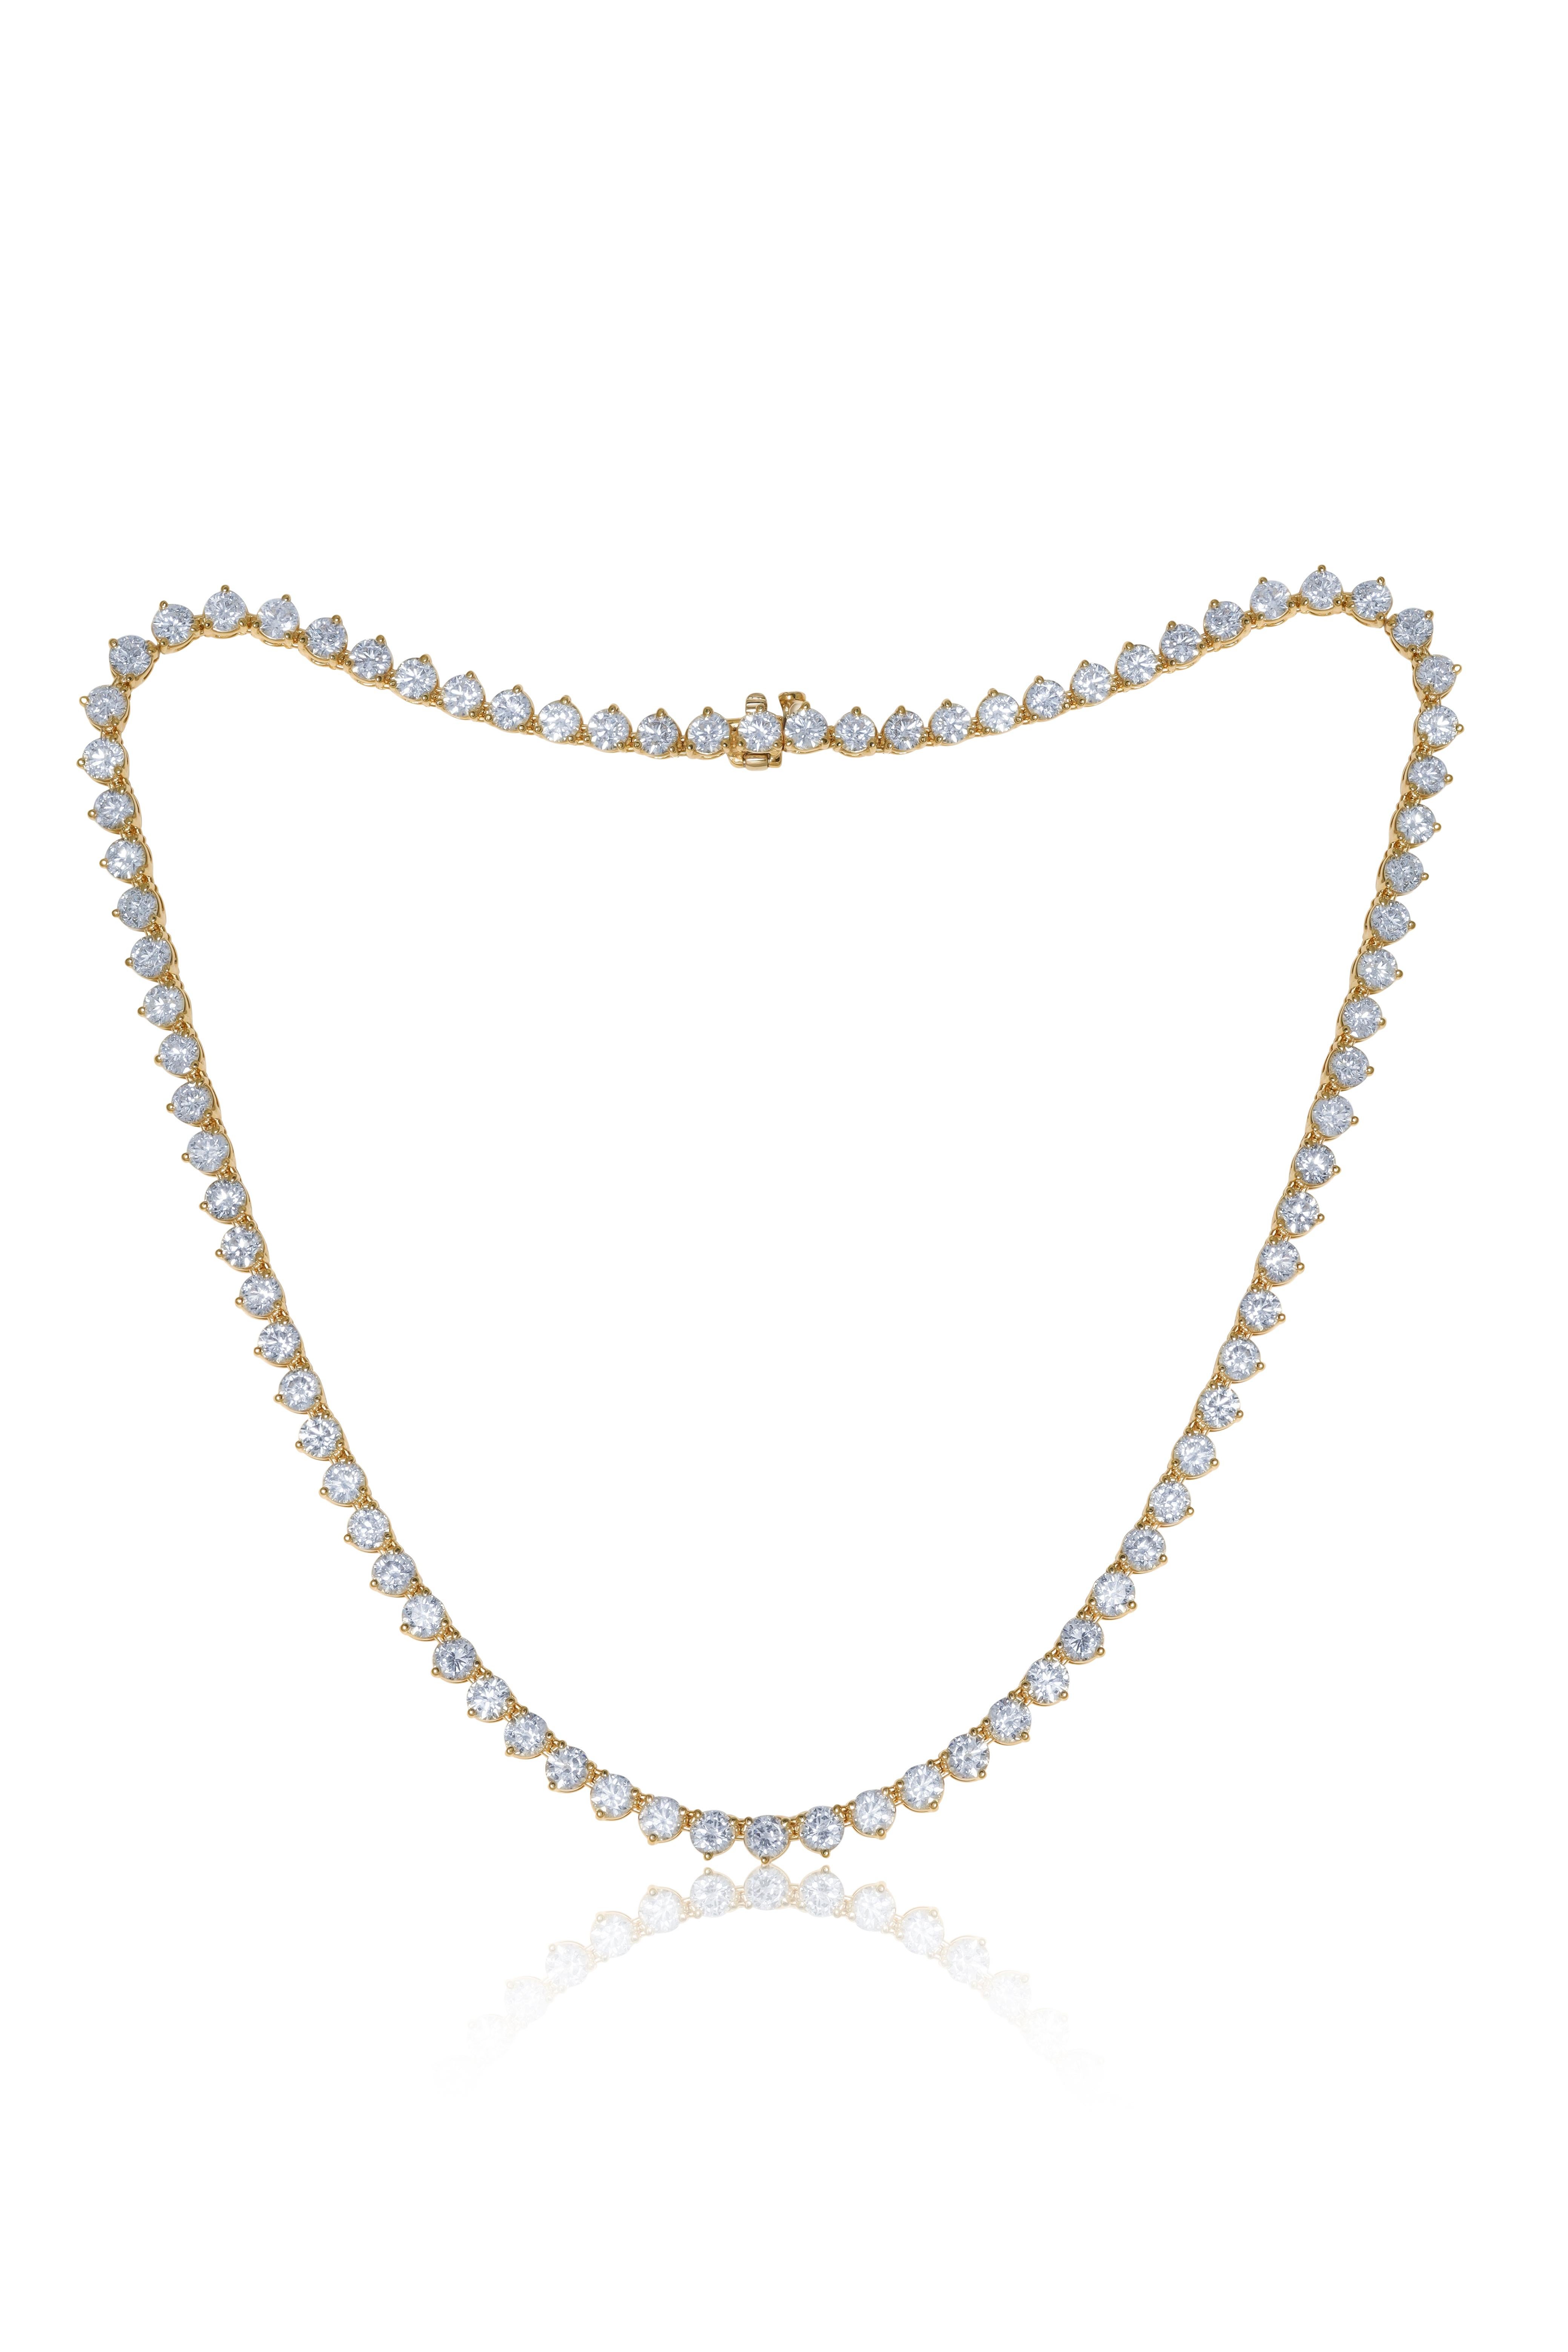 Diana M. Tennis-Halskette aus 18 kt Gelbgold, 17